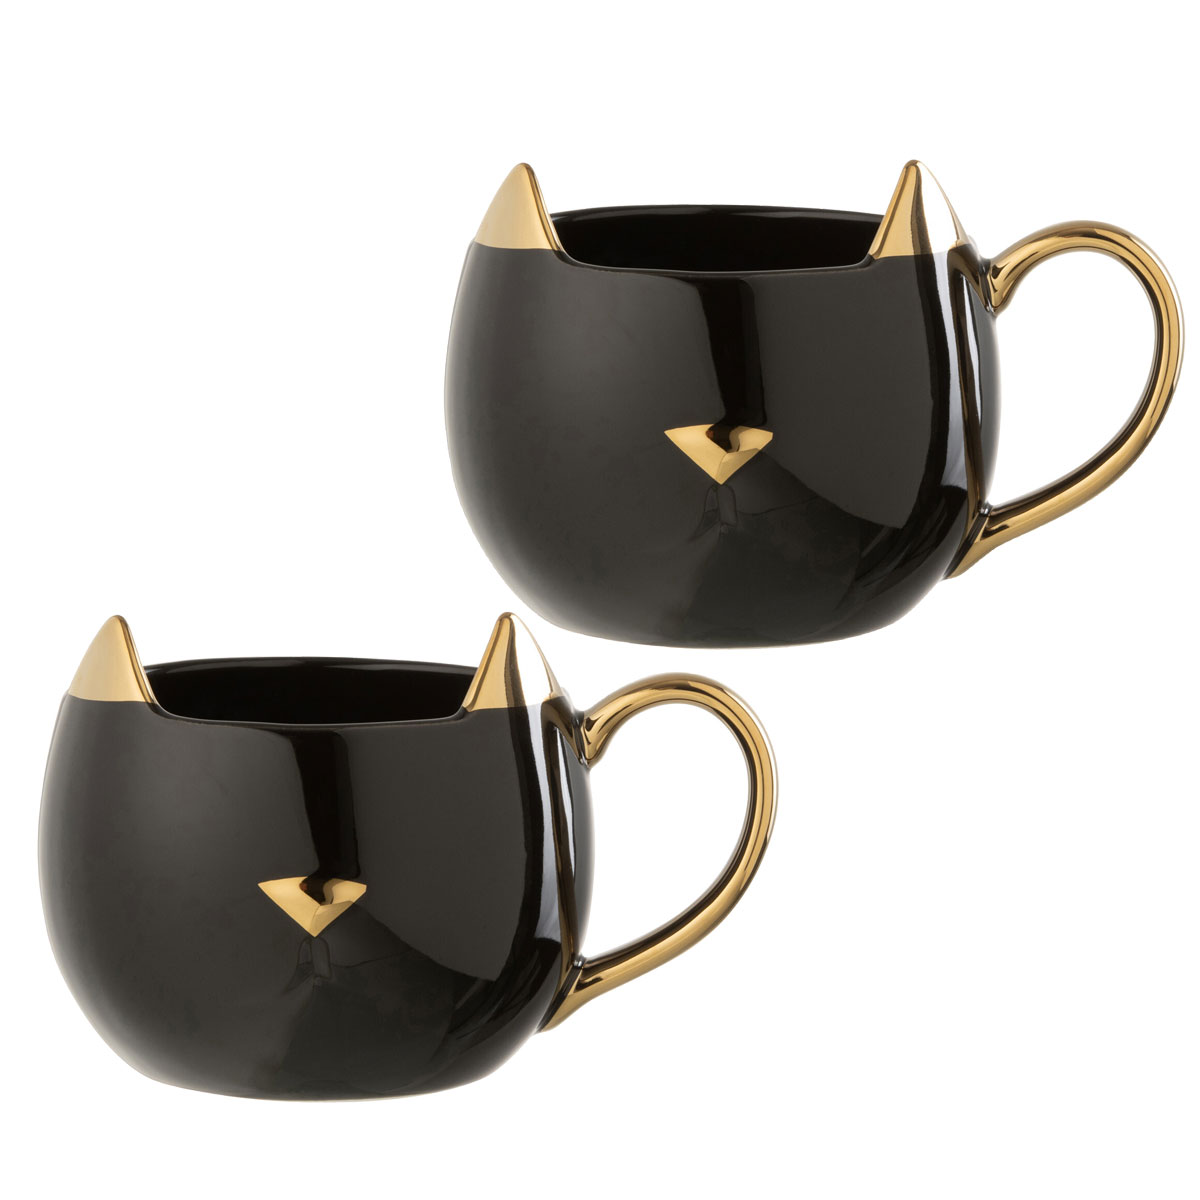 Set of 2 black and gold porcelain cat mugs